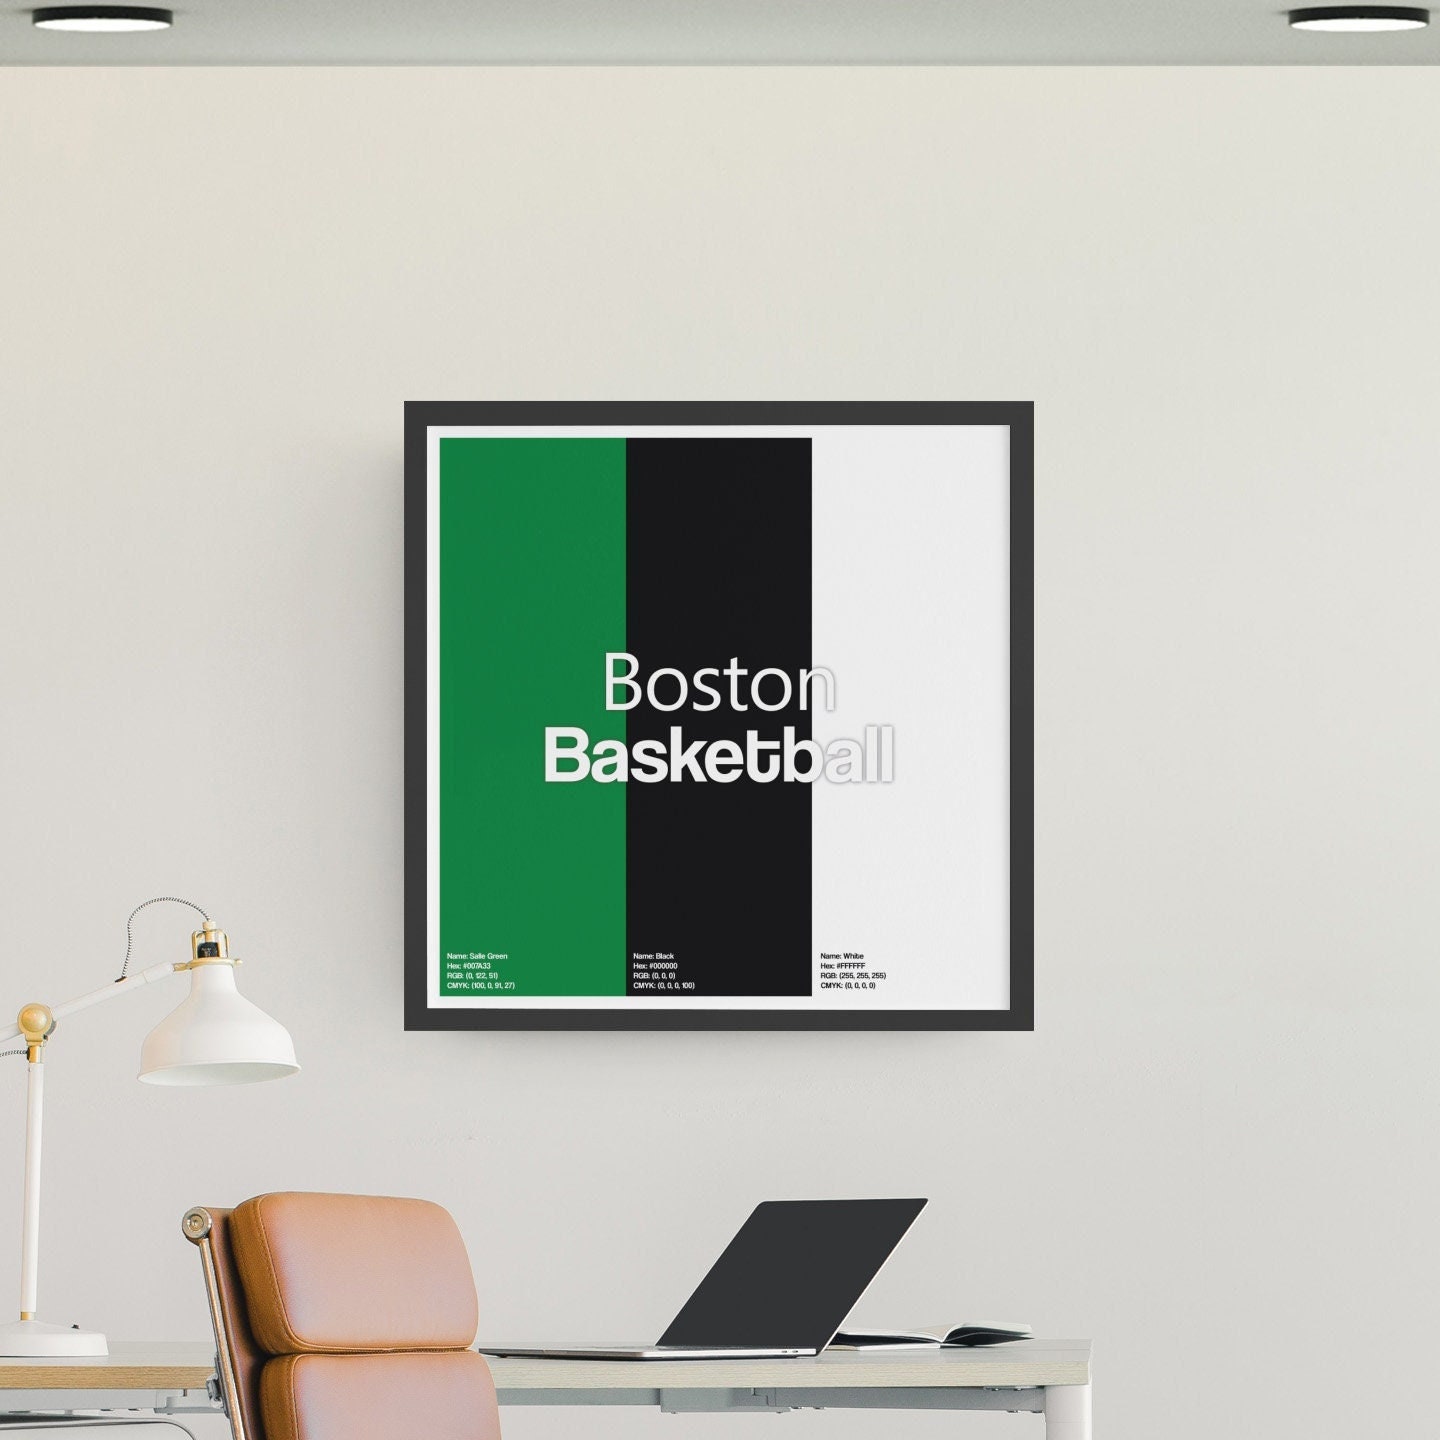 Boston Celtics Poster, Boston Basketball Decor Wall Art Pantone Inspired [UNFRAMED]